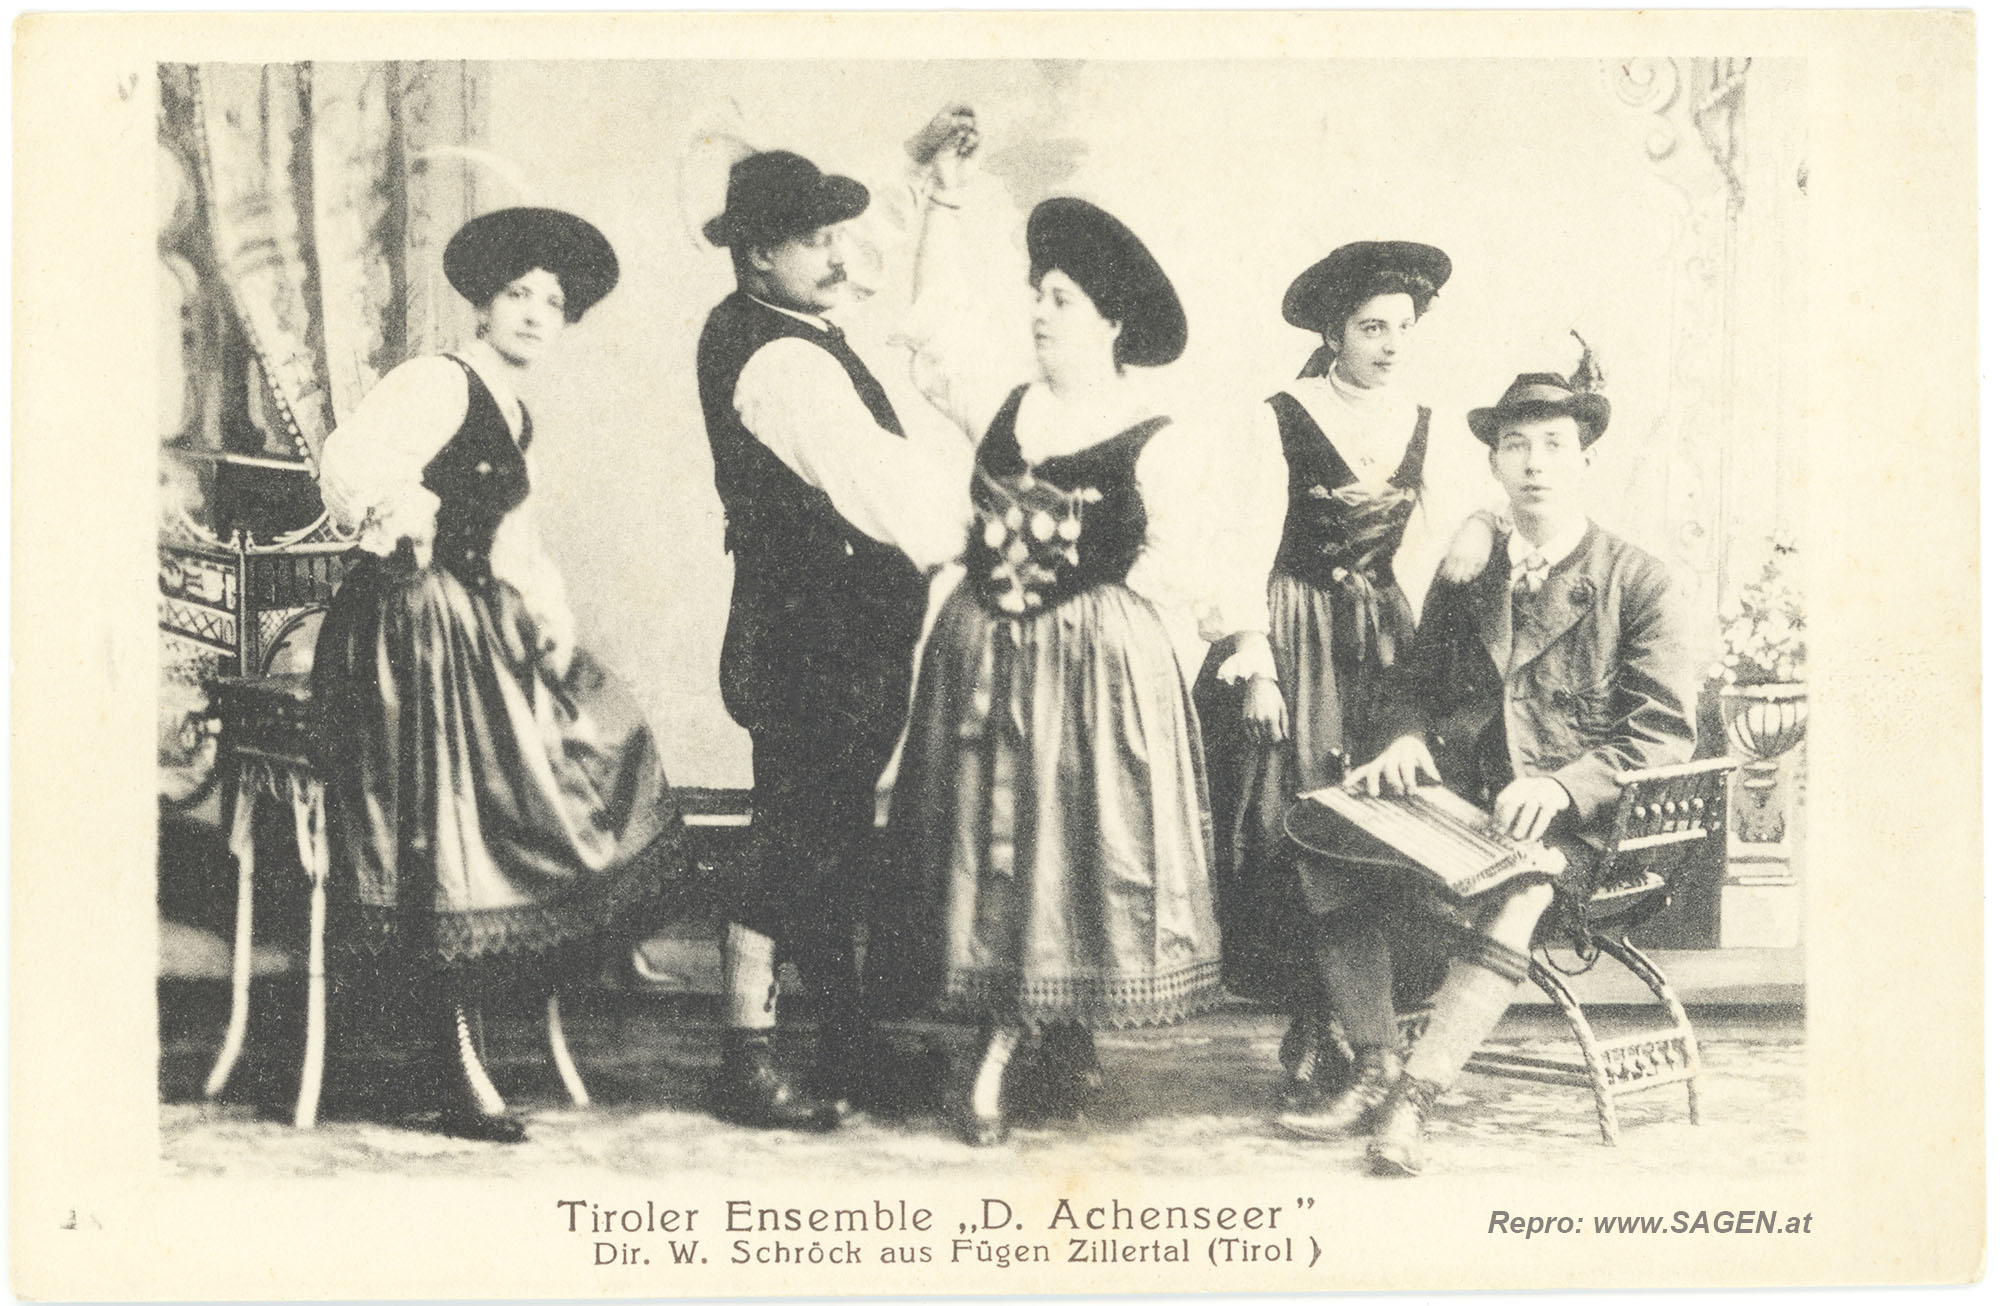 Tiroler Ensemble "D. Achenseer"